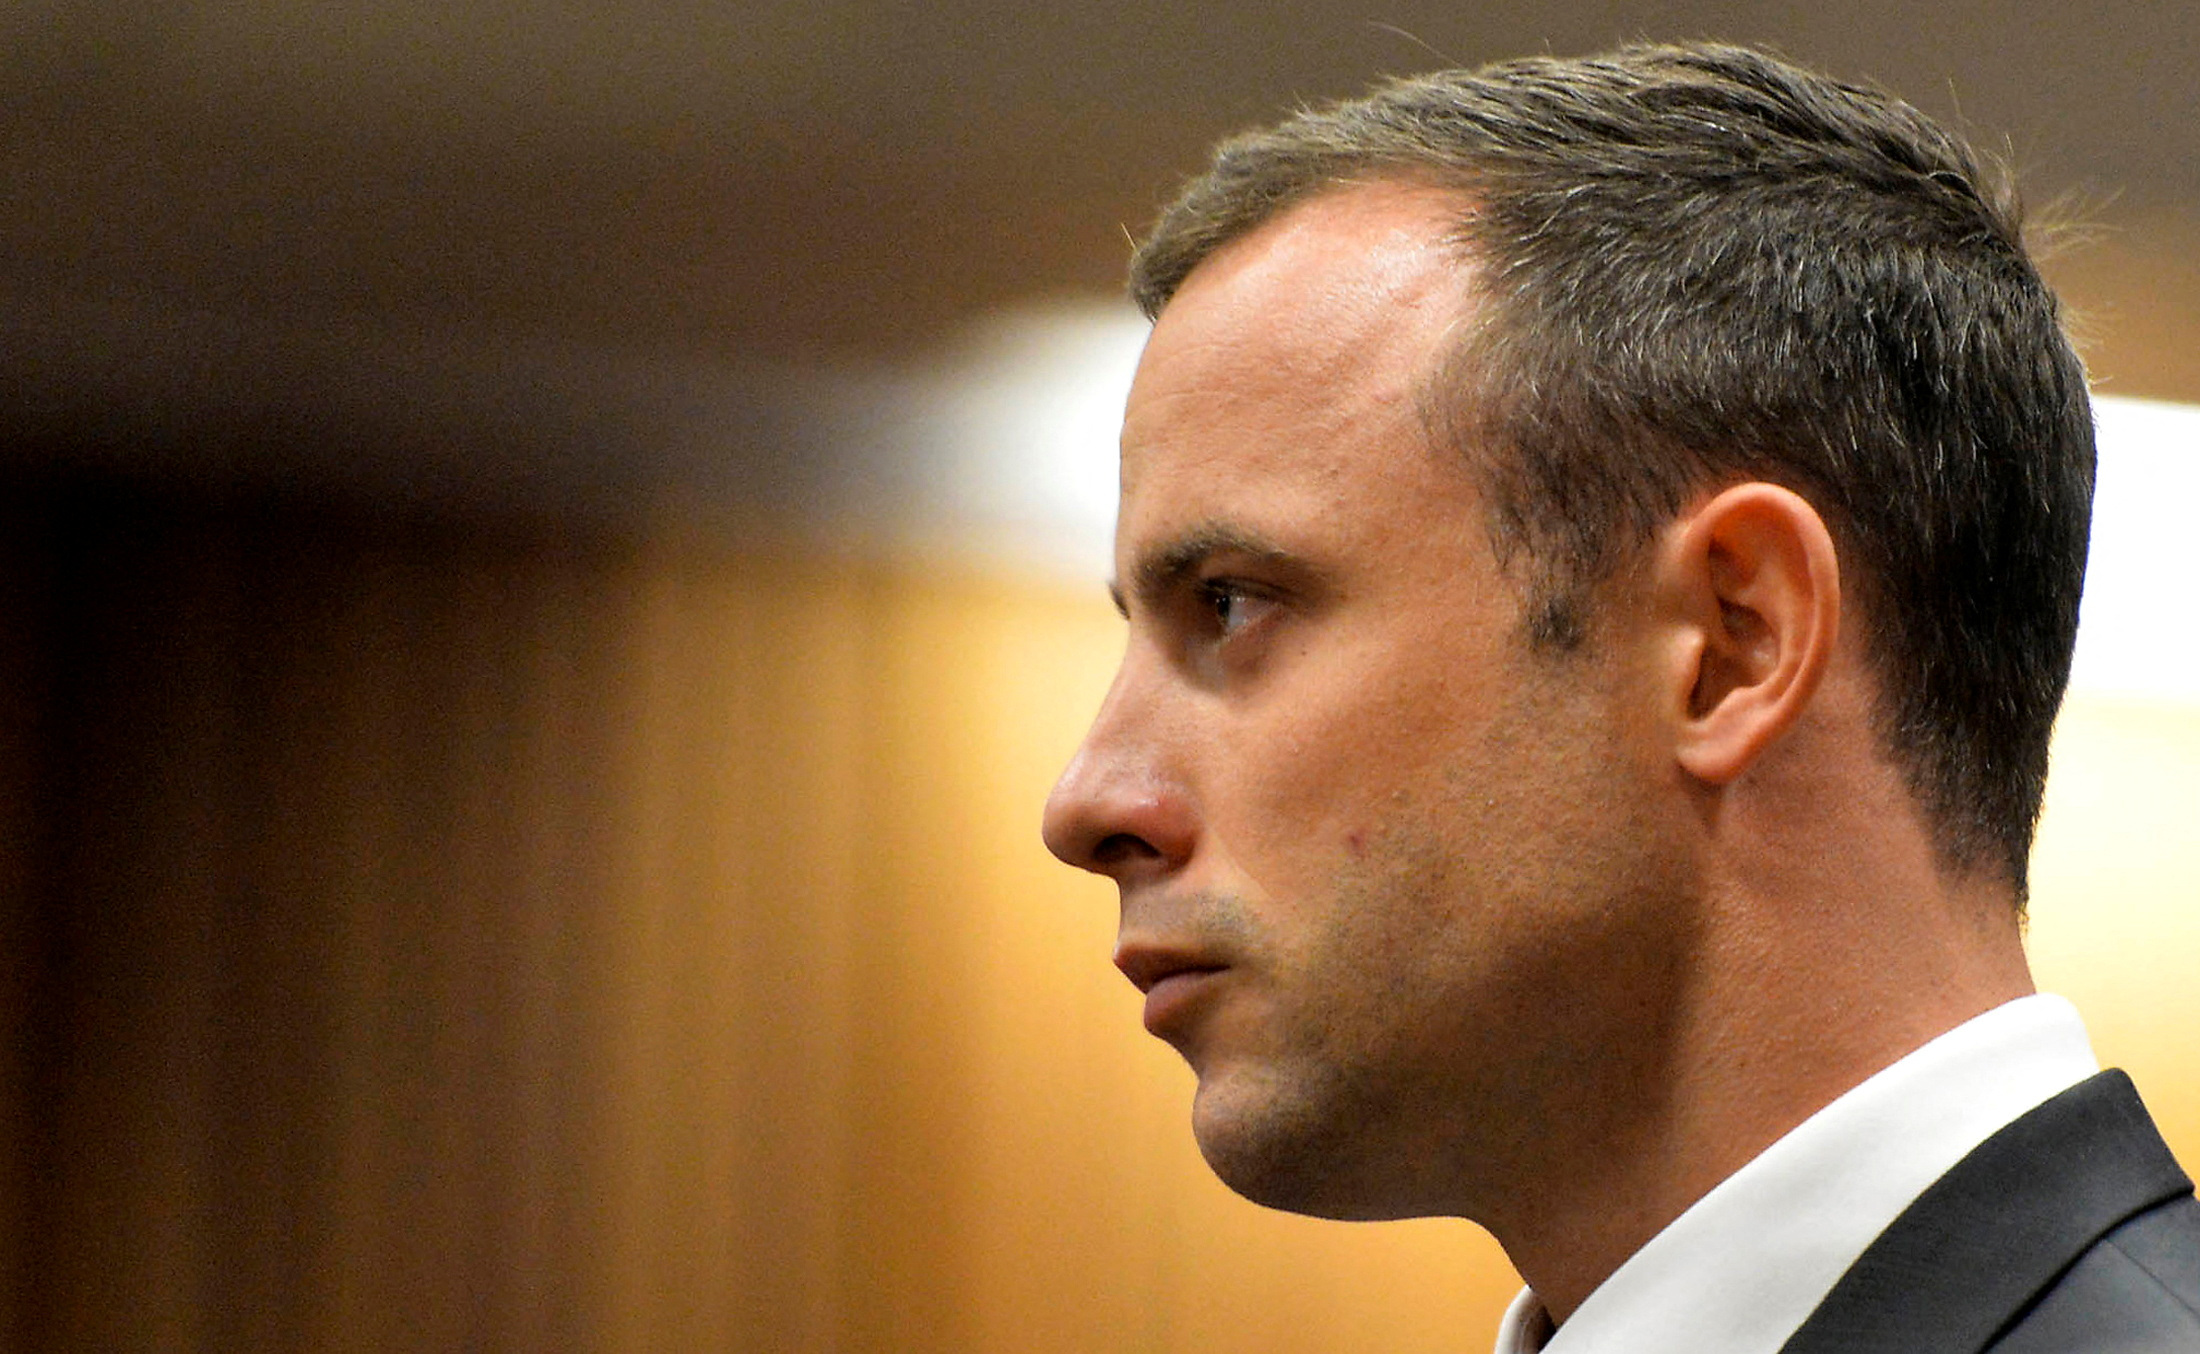 Una junta le negó la libertad condicional a Oscar Pistorius, condenado por el crimen de su novia Reeva Steenkamp en 2013